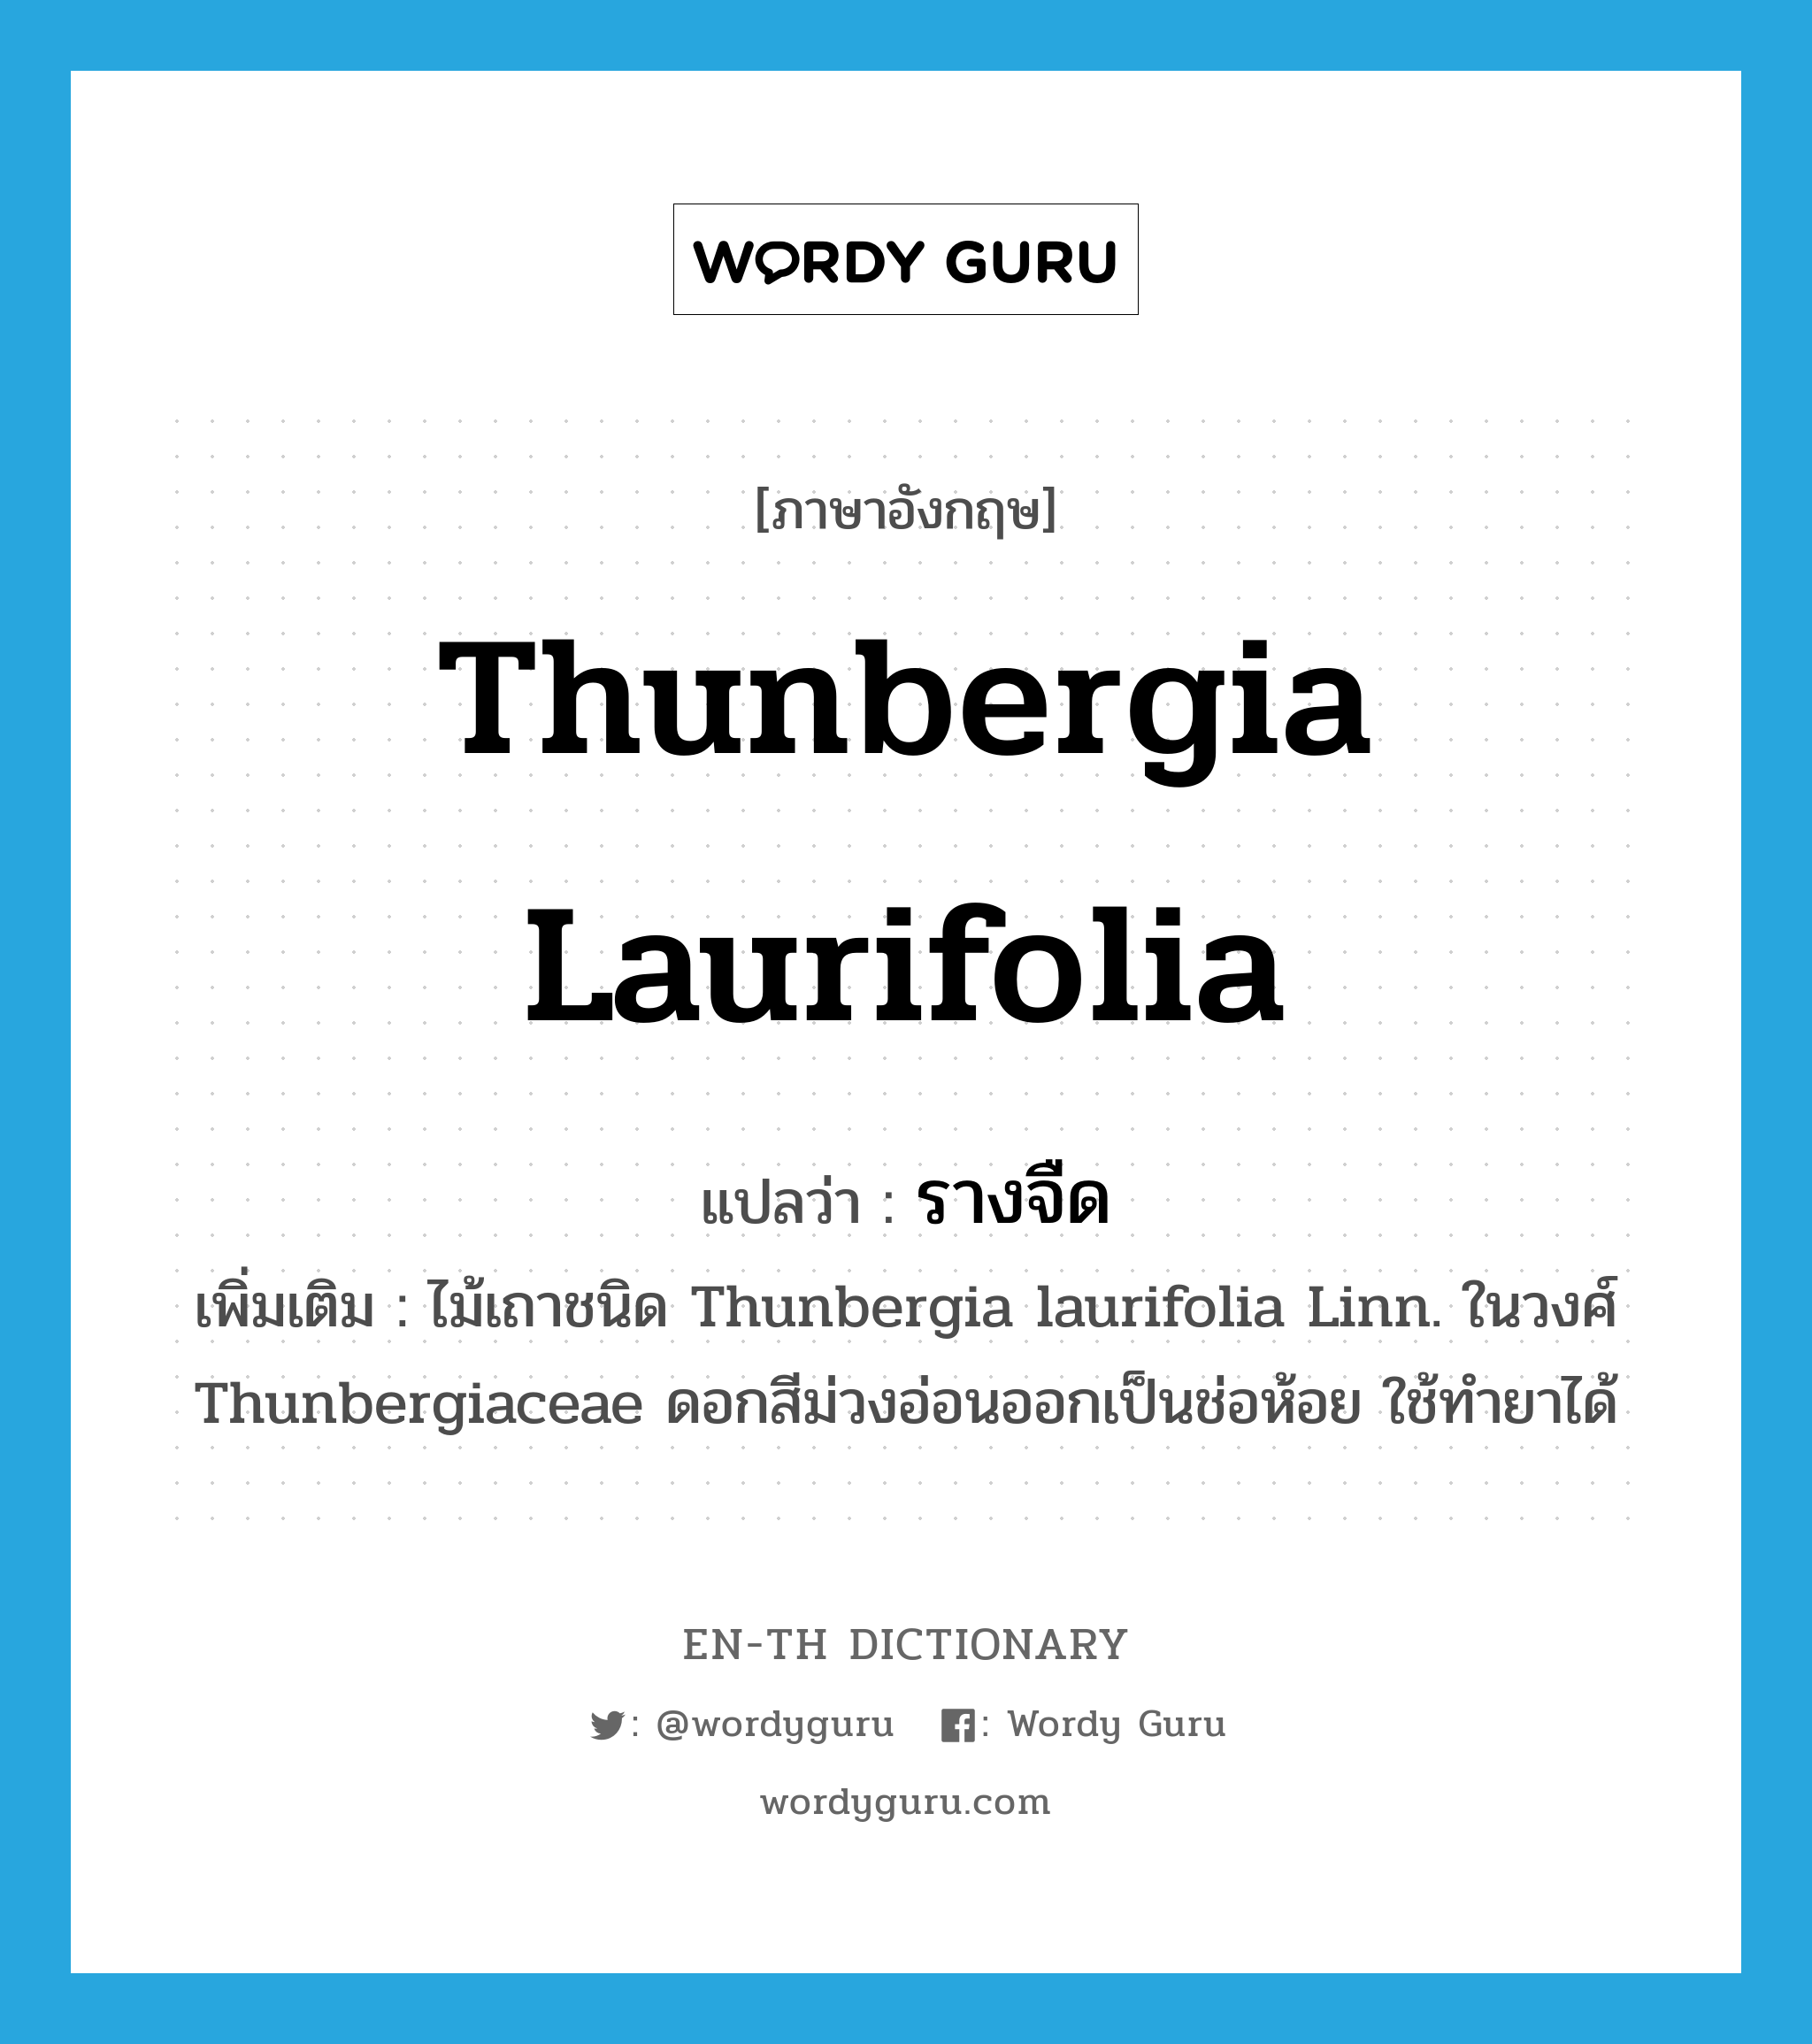 รางจืด ภาษาอังกฤษ?, คำศัพท์ภาษาอังกฤษ รางจืด แปลว่า Thunbergia laurifolia ประเภท N เพิ่มเติม ไม้เถาชนิด Thunbergia laurifolia Linn. ในวงศ์ Thunbergiaceae ดอกสีม่วงอ่อนออกเป็นช่อห้อย ใช้ทำยาได้ หมวด N